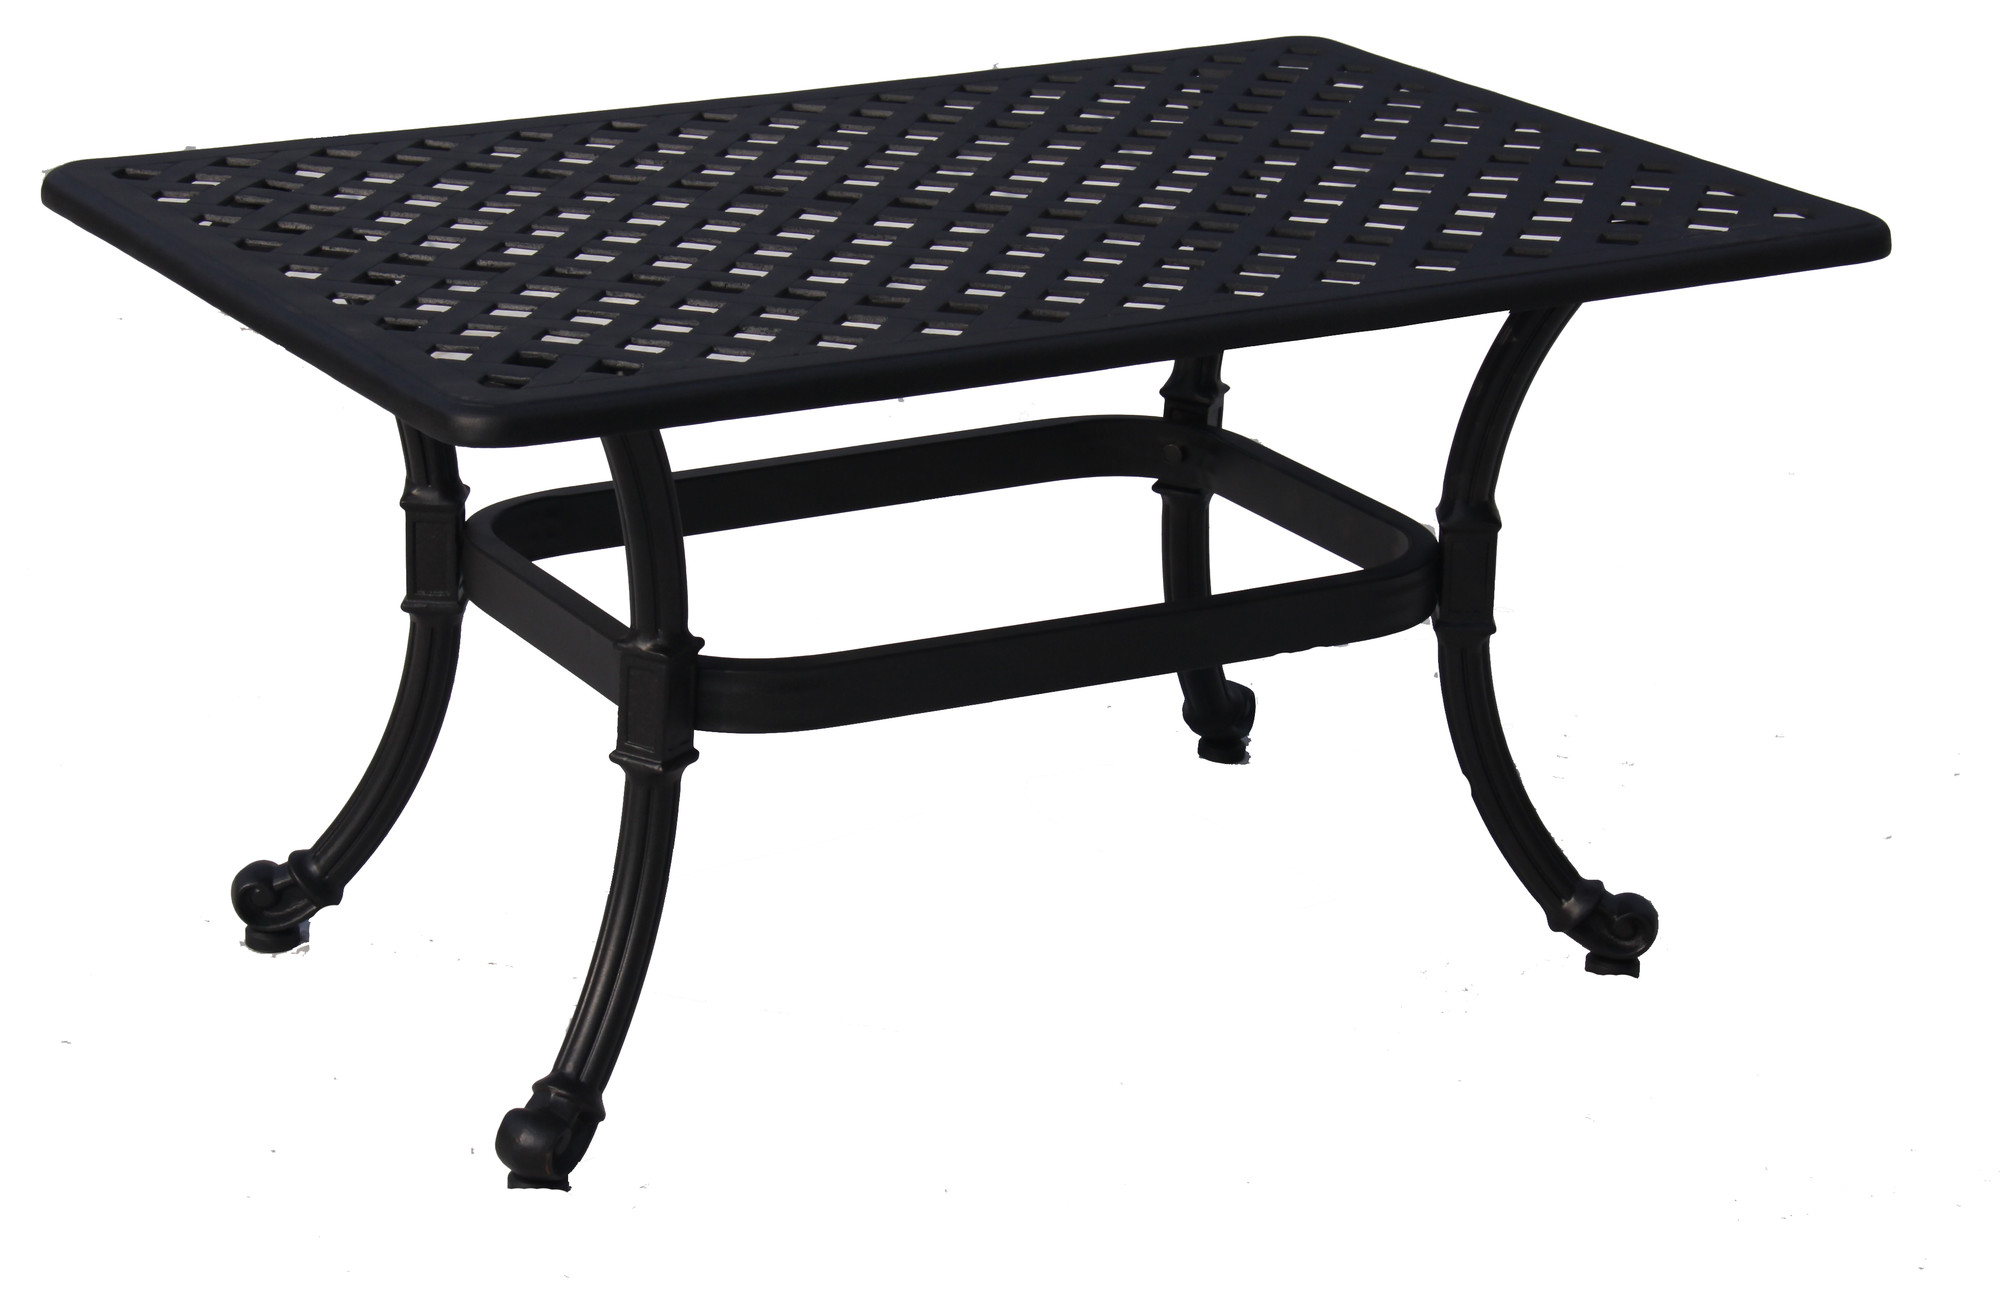 Paragon Casual Edina Rectangular Table Finish: Textured Black, Size: 24"